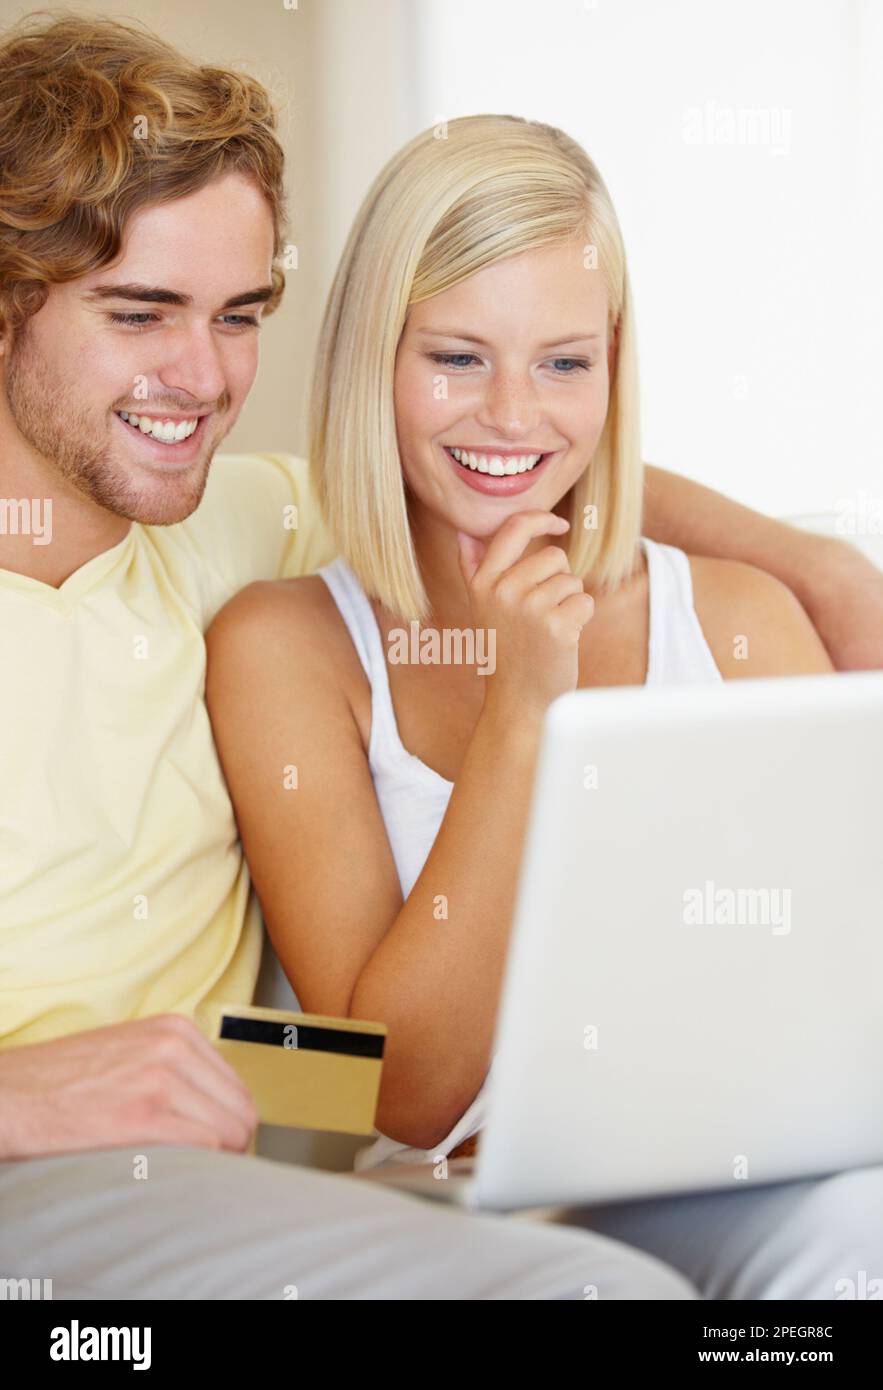 C'est exactement ce que je veux. Un jeune couple heureux faisant leur banque en ligne depuis le confort de leur canapé. Banque D'Images